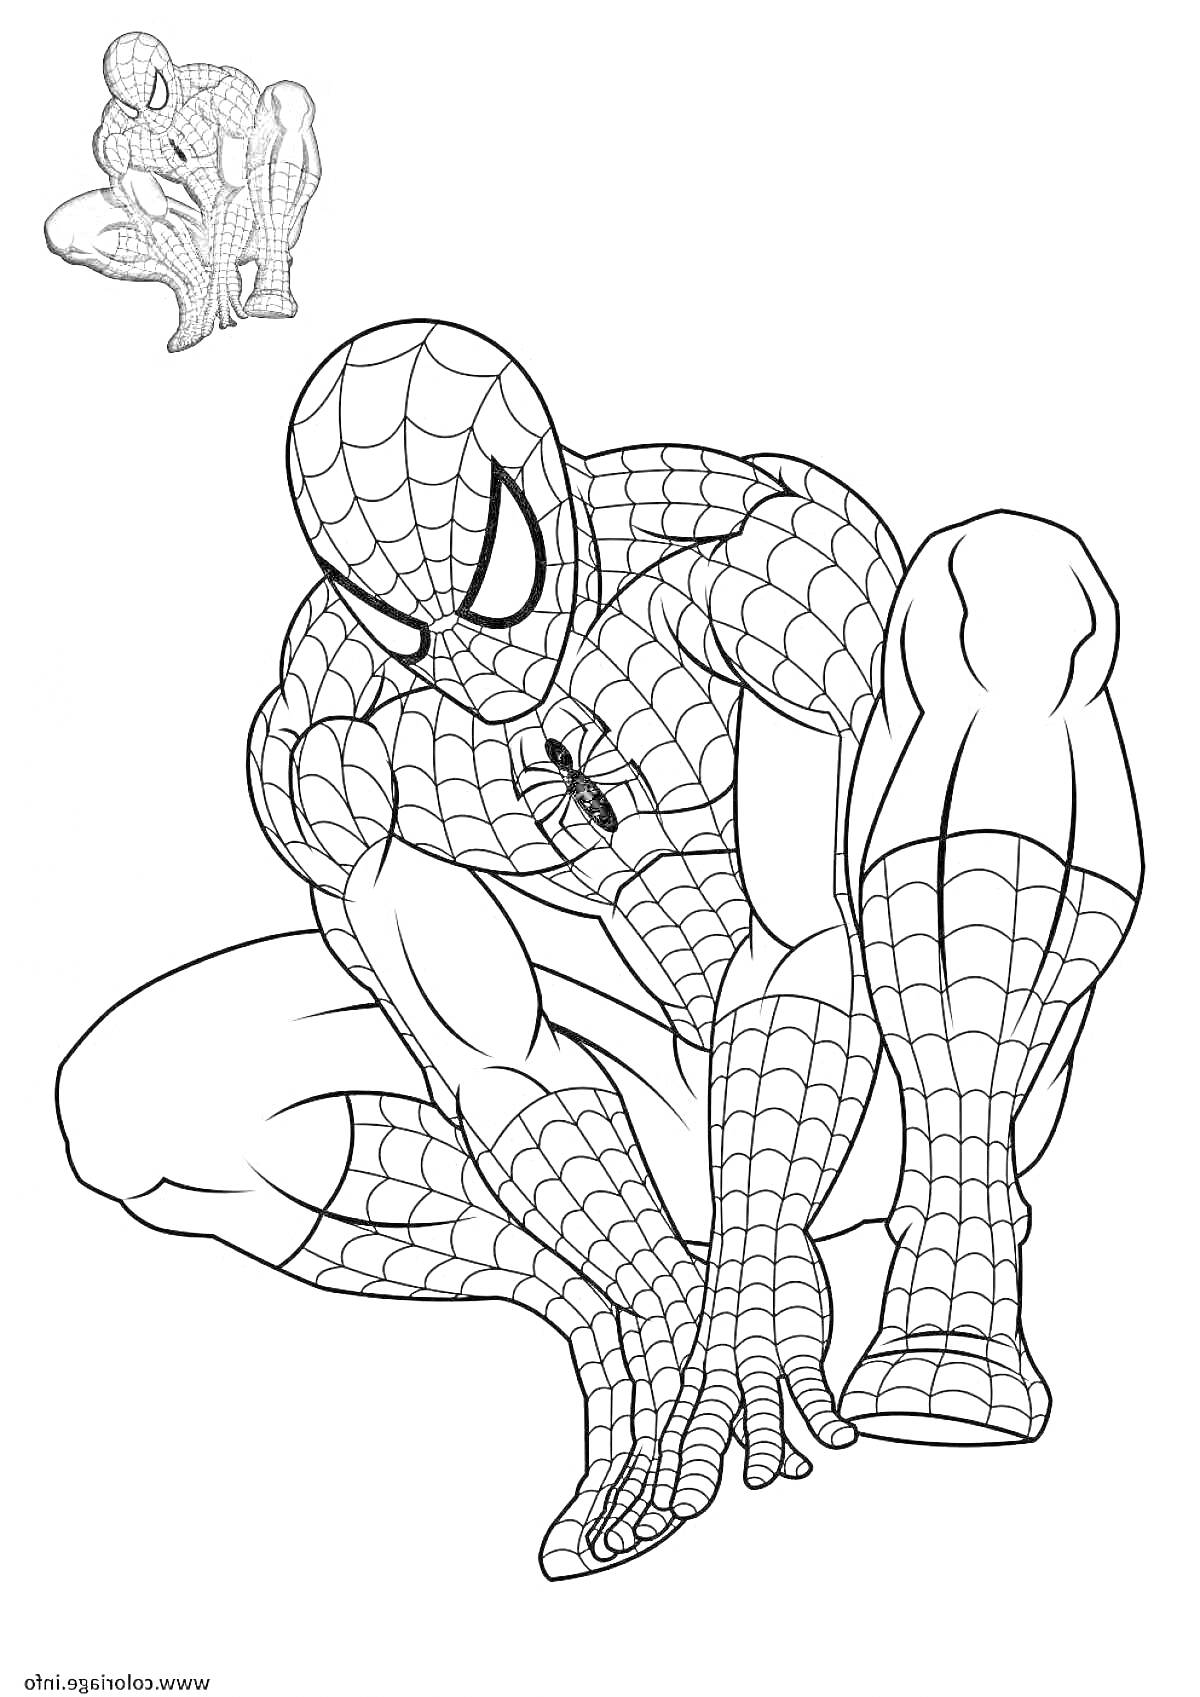 Раскраска Человек-паук в позе на корточках с дополнительным изображением Человека-паука, сидящего на корточках в левом верхнем углу